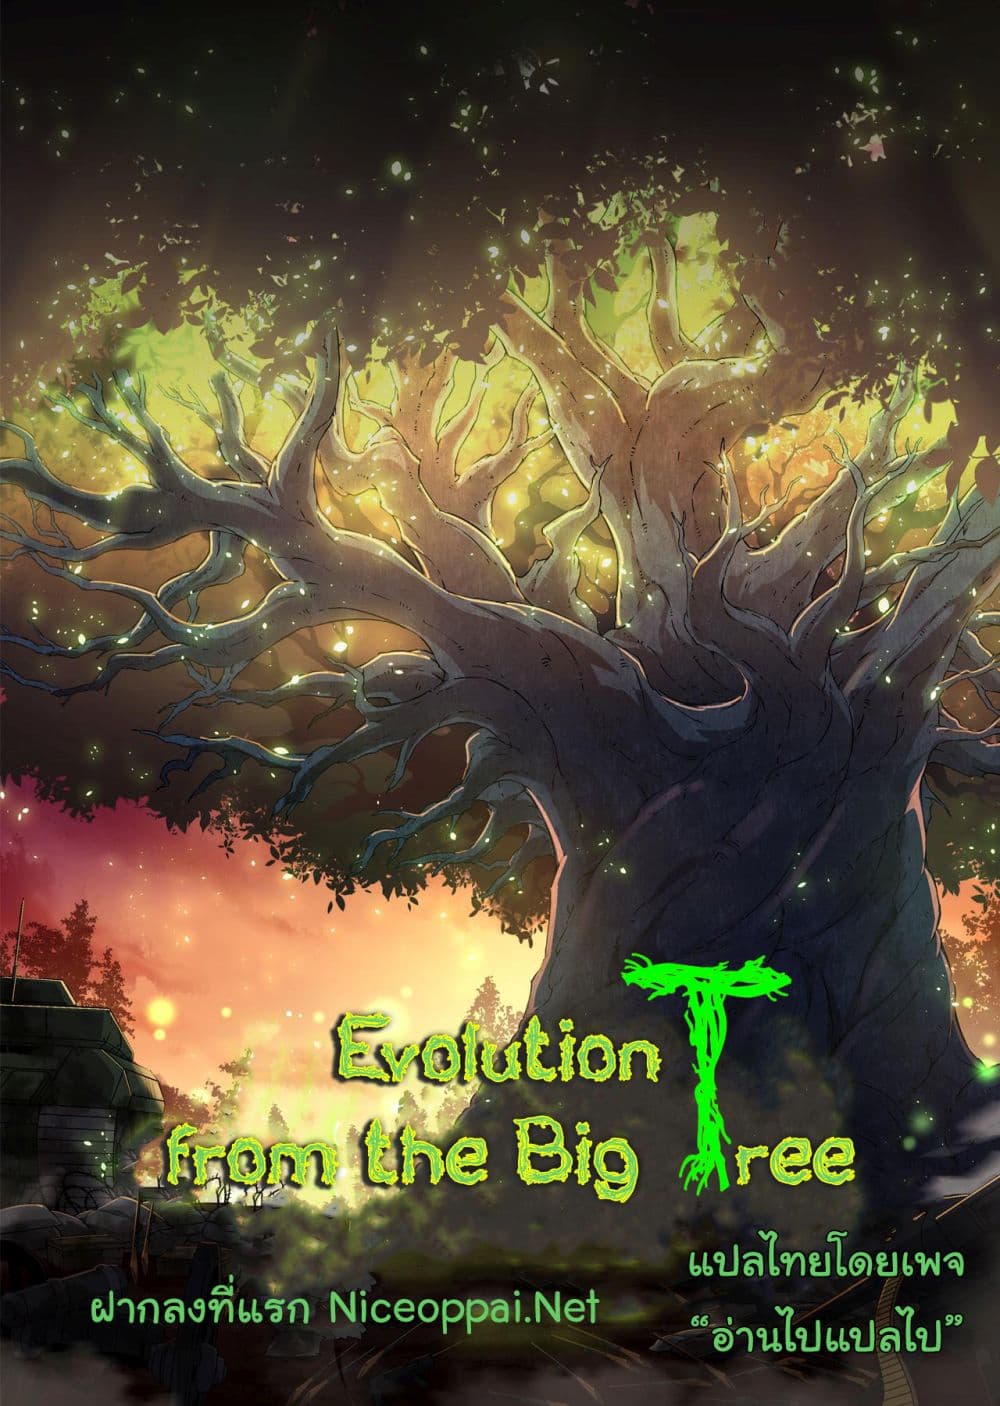 Evolution from the Big Tree Ã Â¸â€¢Ã Â¸Â­Ã Â¸â„¢Ã Â¸â€”Ã Â¸ÂµÃ Â¹Ë† 20 (48)